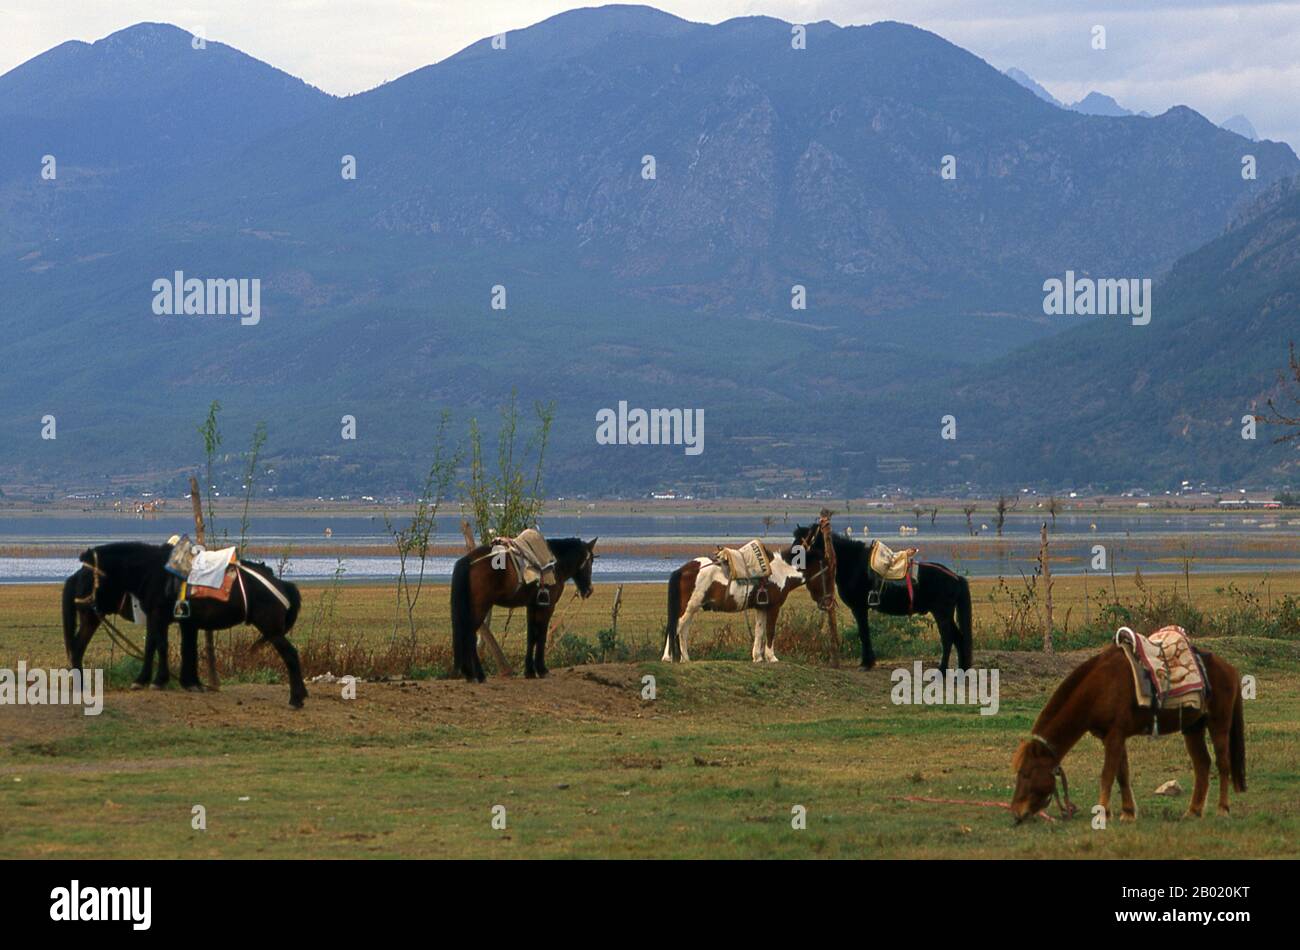 Il Lago di Lashi (Lashihai), ad un'altitudine di 2500 metri, è il più grande lago di altopiano della contea di Lijiang, nella provincia di Yunnan. Fino a 57 specie di uccelli migratori utilizzano il lago, tra cui cigni e gru a collo nero. Foto Stock